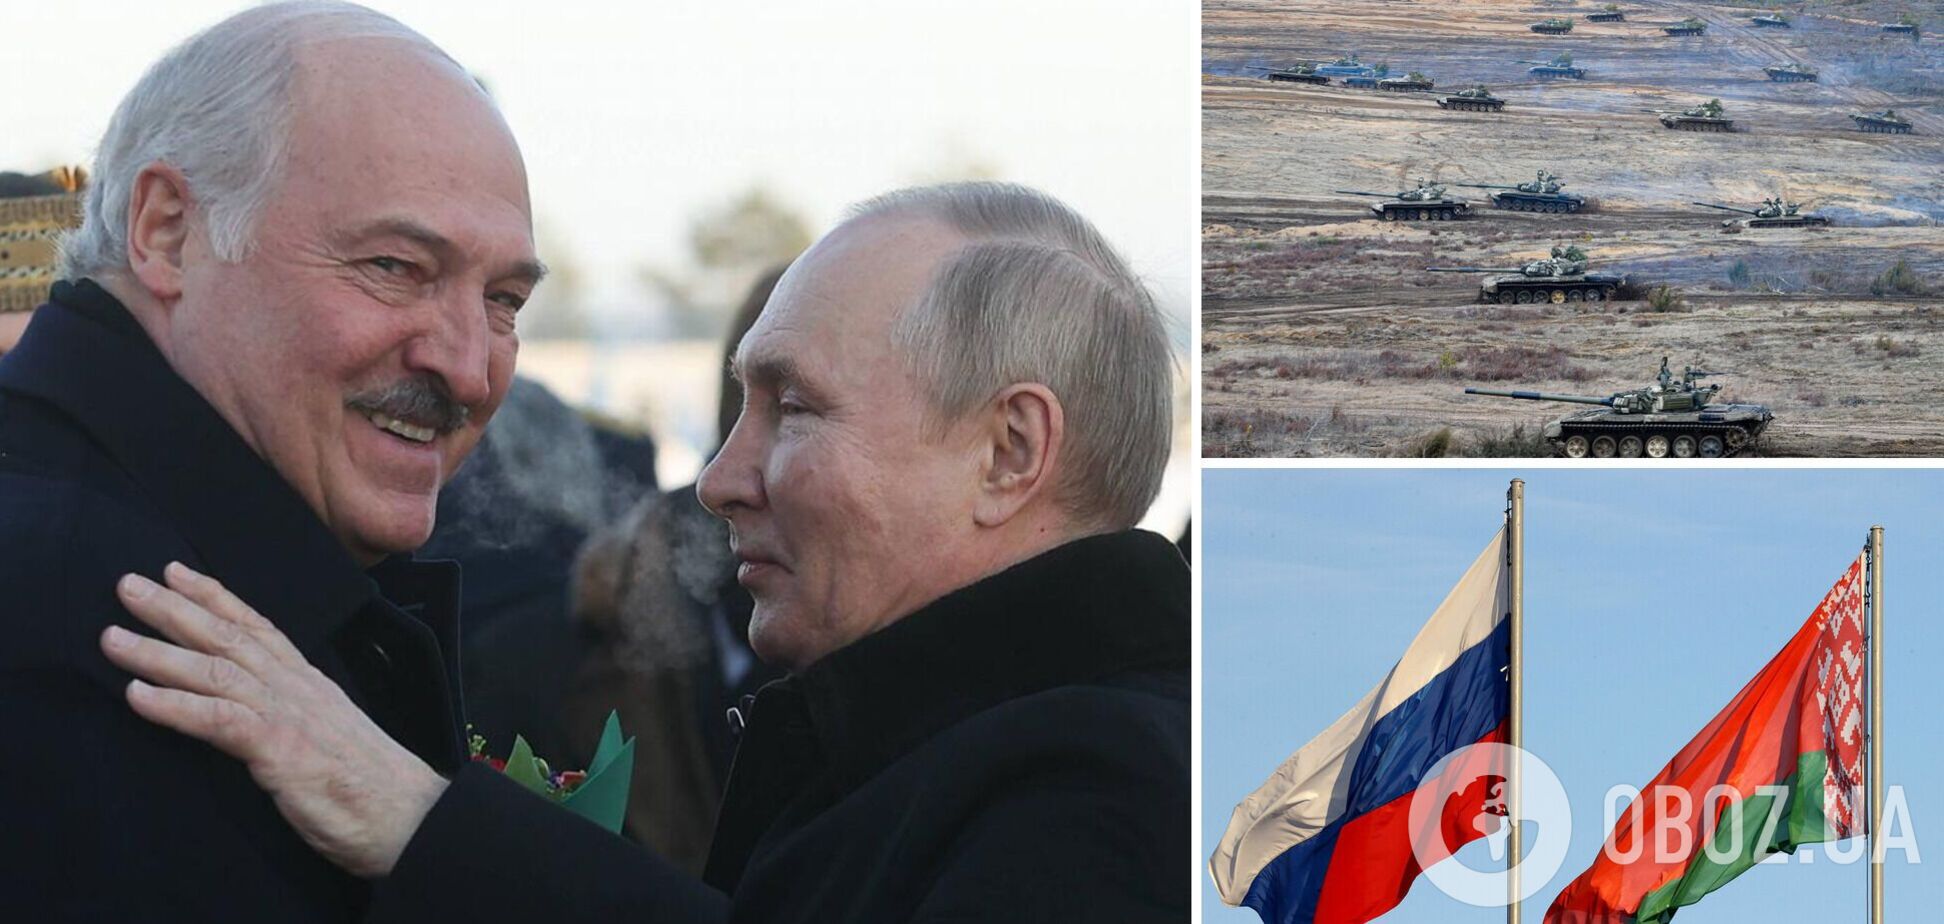 Кремль намагається приховати справжні наміри Путіна щодо Білорусі, а Лукашенко 'маневрує' – ISW про переговори в Мінську